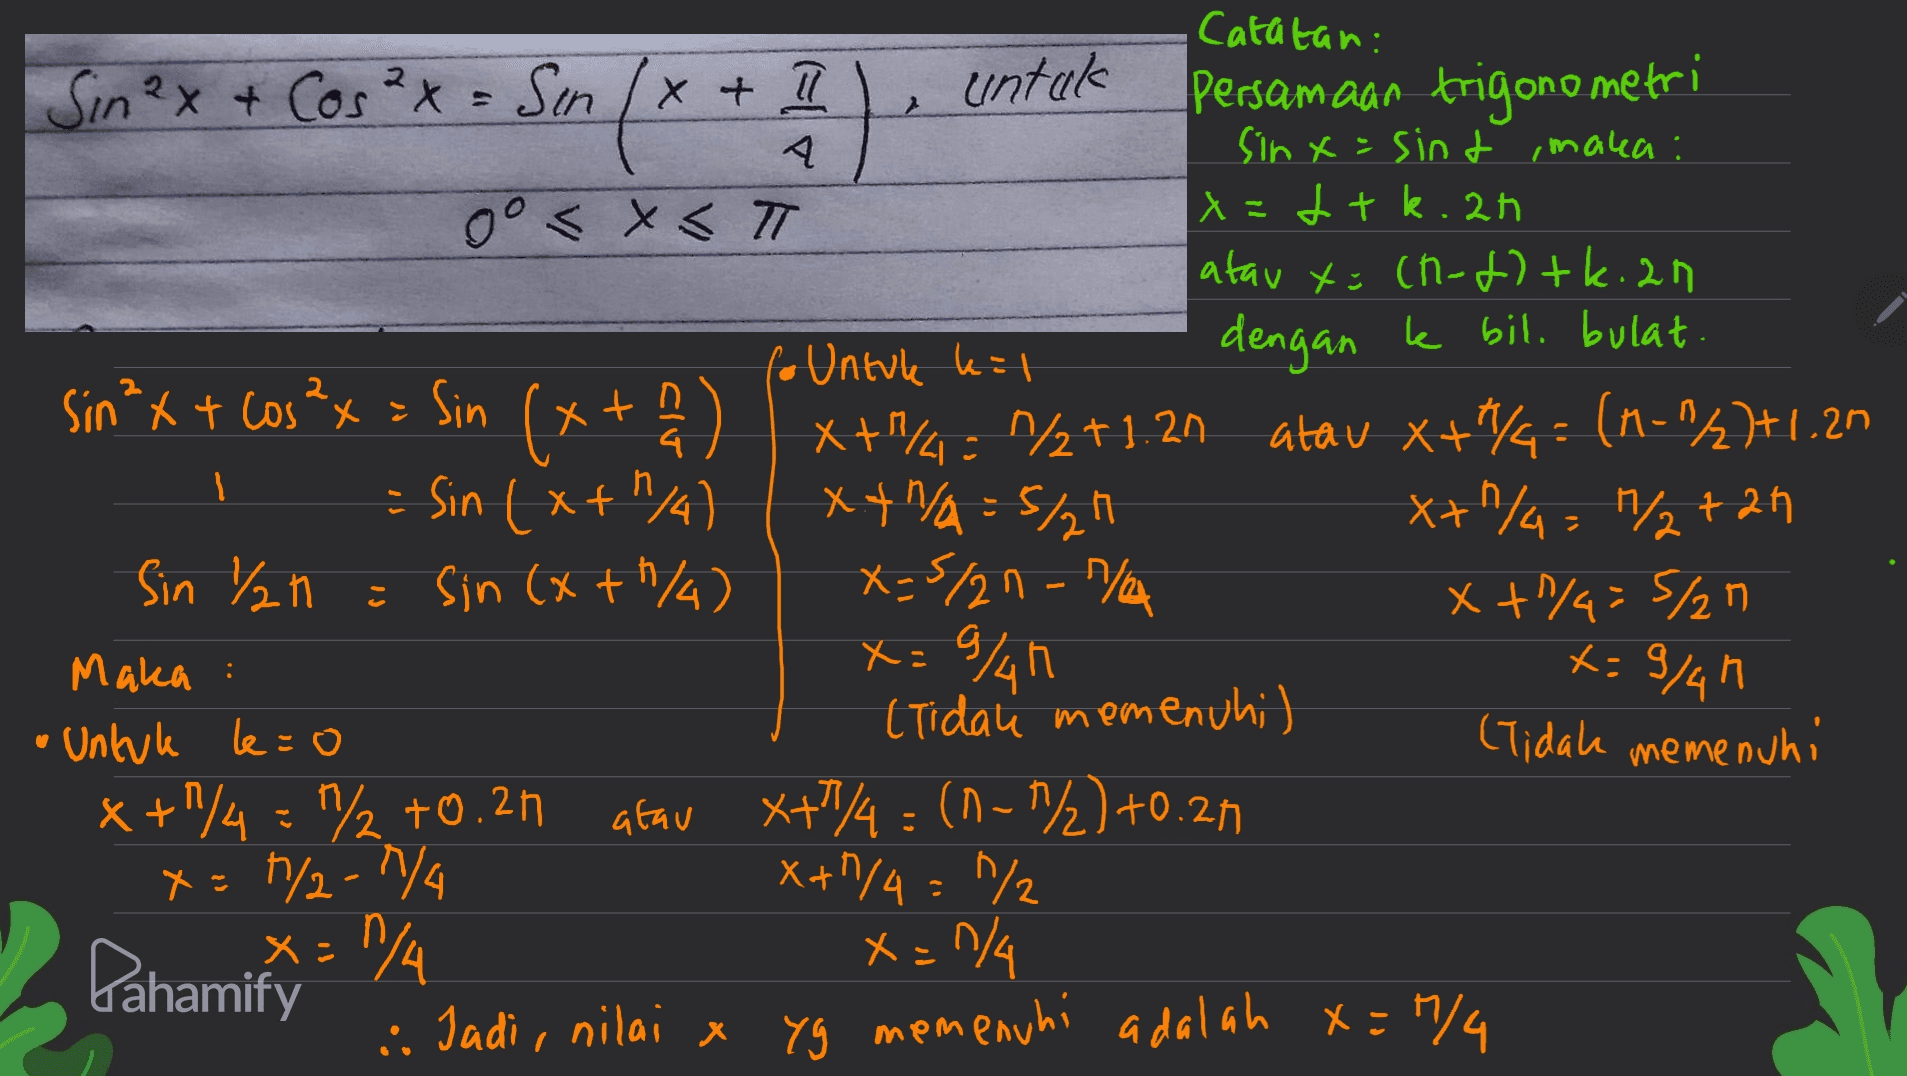 Catatan: - Sm (x + 5) untuk I Sin2x + Cos²x = Sin/x+ 11 Persamaan trigonometri sinx=sint ,maka : oo < x <T x=1tk.ah atau x=(n-1)+k.an . dengan ke bil. bulat fo Untule kil sin *x + cos2x = Sin (x + ) x+y=1%2+1.21 atau x+8 = (n="2]+1.20 Sin (x+1/4 xt/A=5/24 X+ 1/4 = 1/2+2n Sin /h i sin (x+h/4) x=5/2n- n/a x + 1/4=5/27 Maka : Untuk le=0 (Tidau memenuhi) (Tidah memenuhi x + 1/4 = "72 +0.21 atau X+1/4=(1-7/2) +0.21 x=7/2-1/4 X+1/4 = 1/2 x=1/4 x=1/4 . Jadi, nilai x yg memenuhi adalah x=0/4 x=9%h x=9/4h Pahamify 